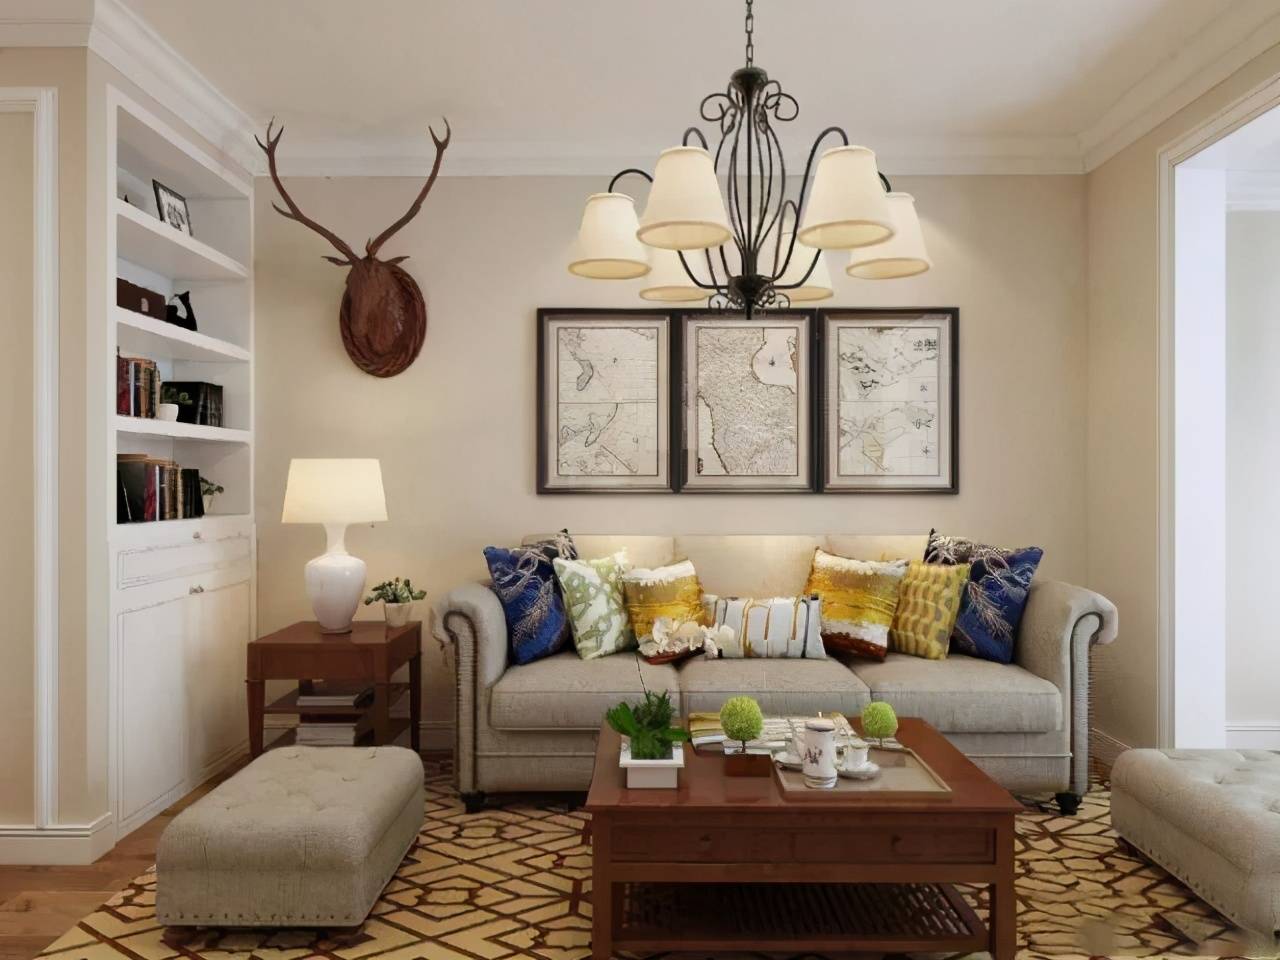 空间感通透,敞亮,米色的沙发与墙体颜色协调,与棕黄色的地板形成